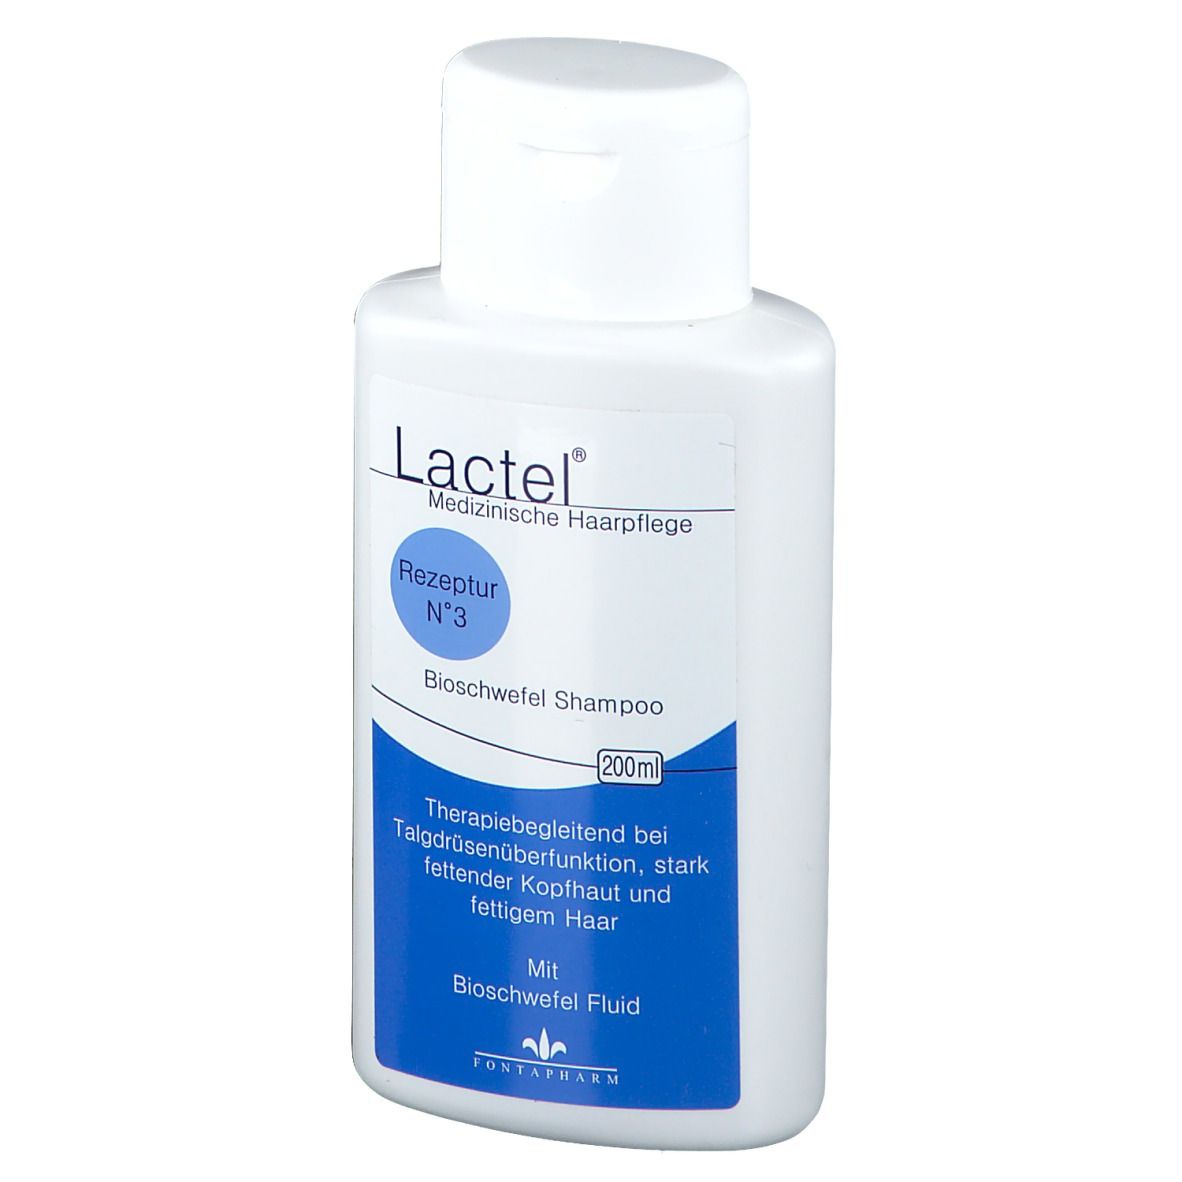 Lactel® N° 3 Bioschwefel Shampoo